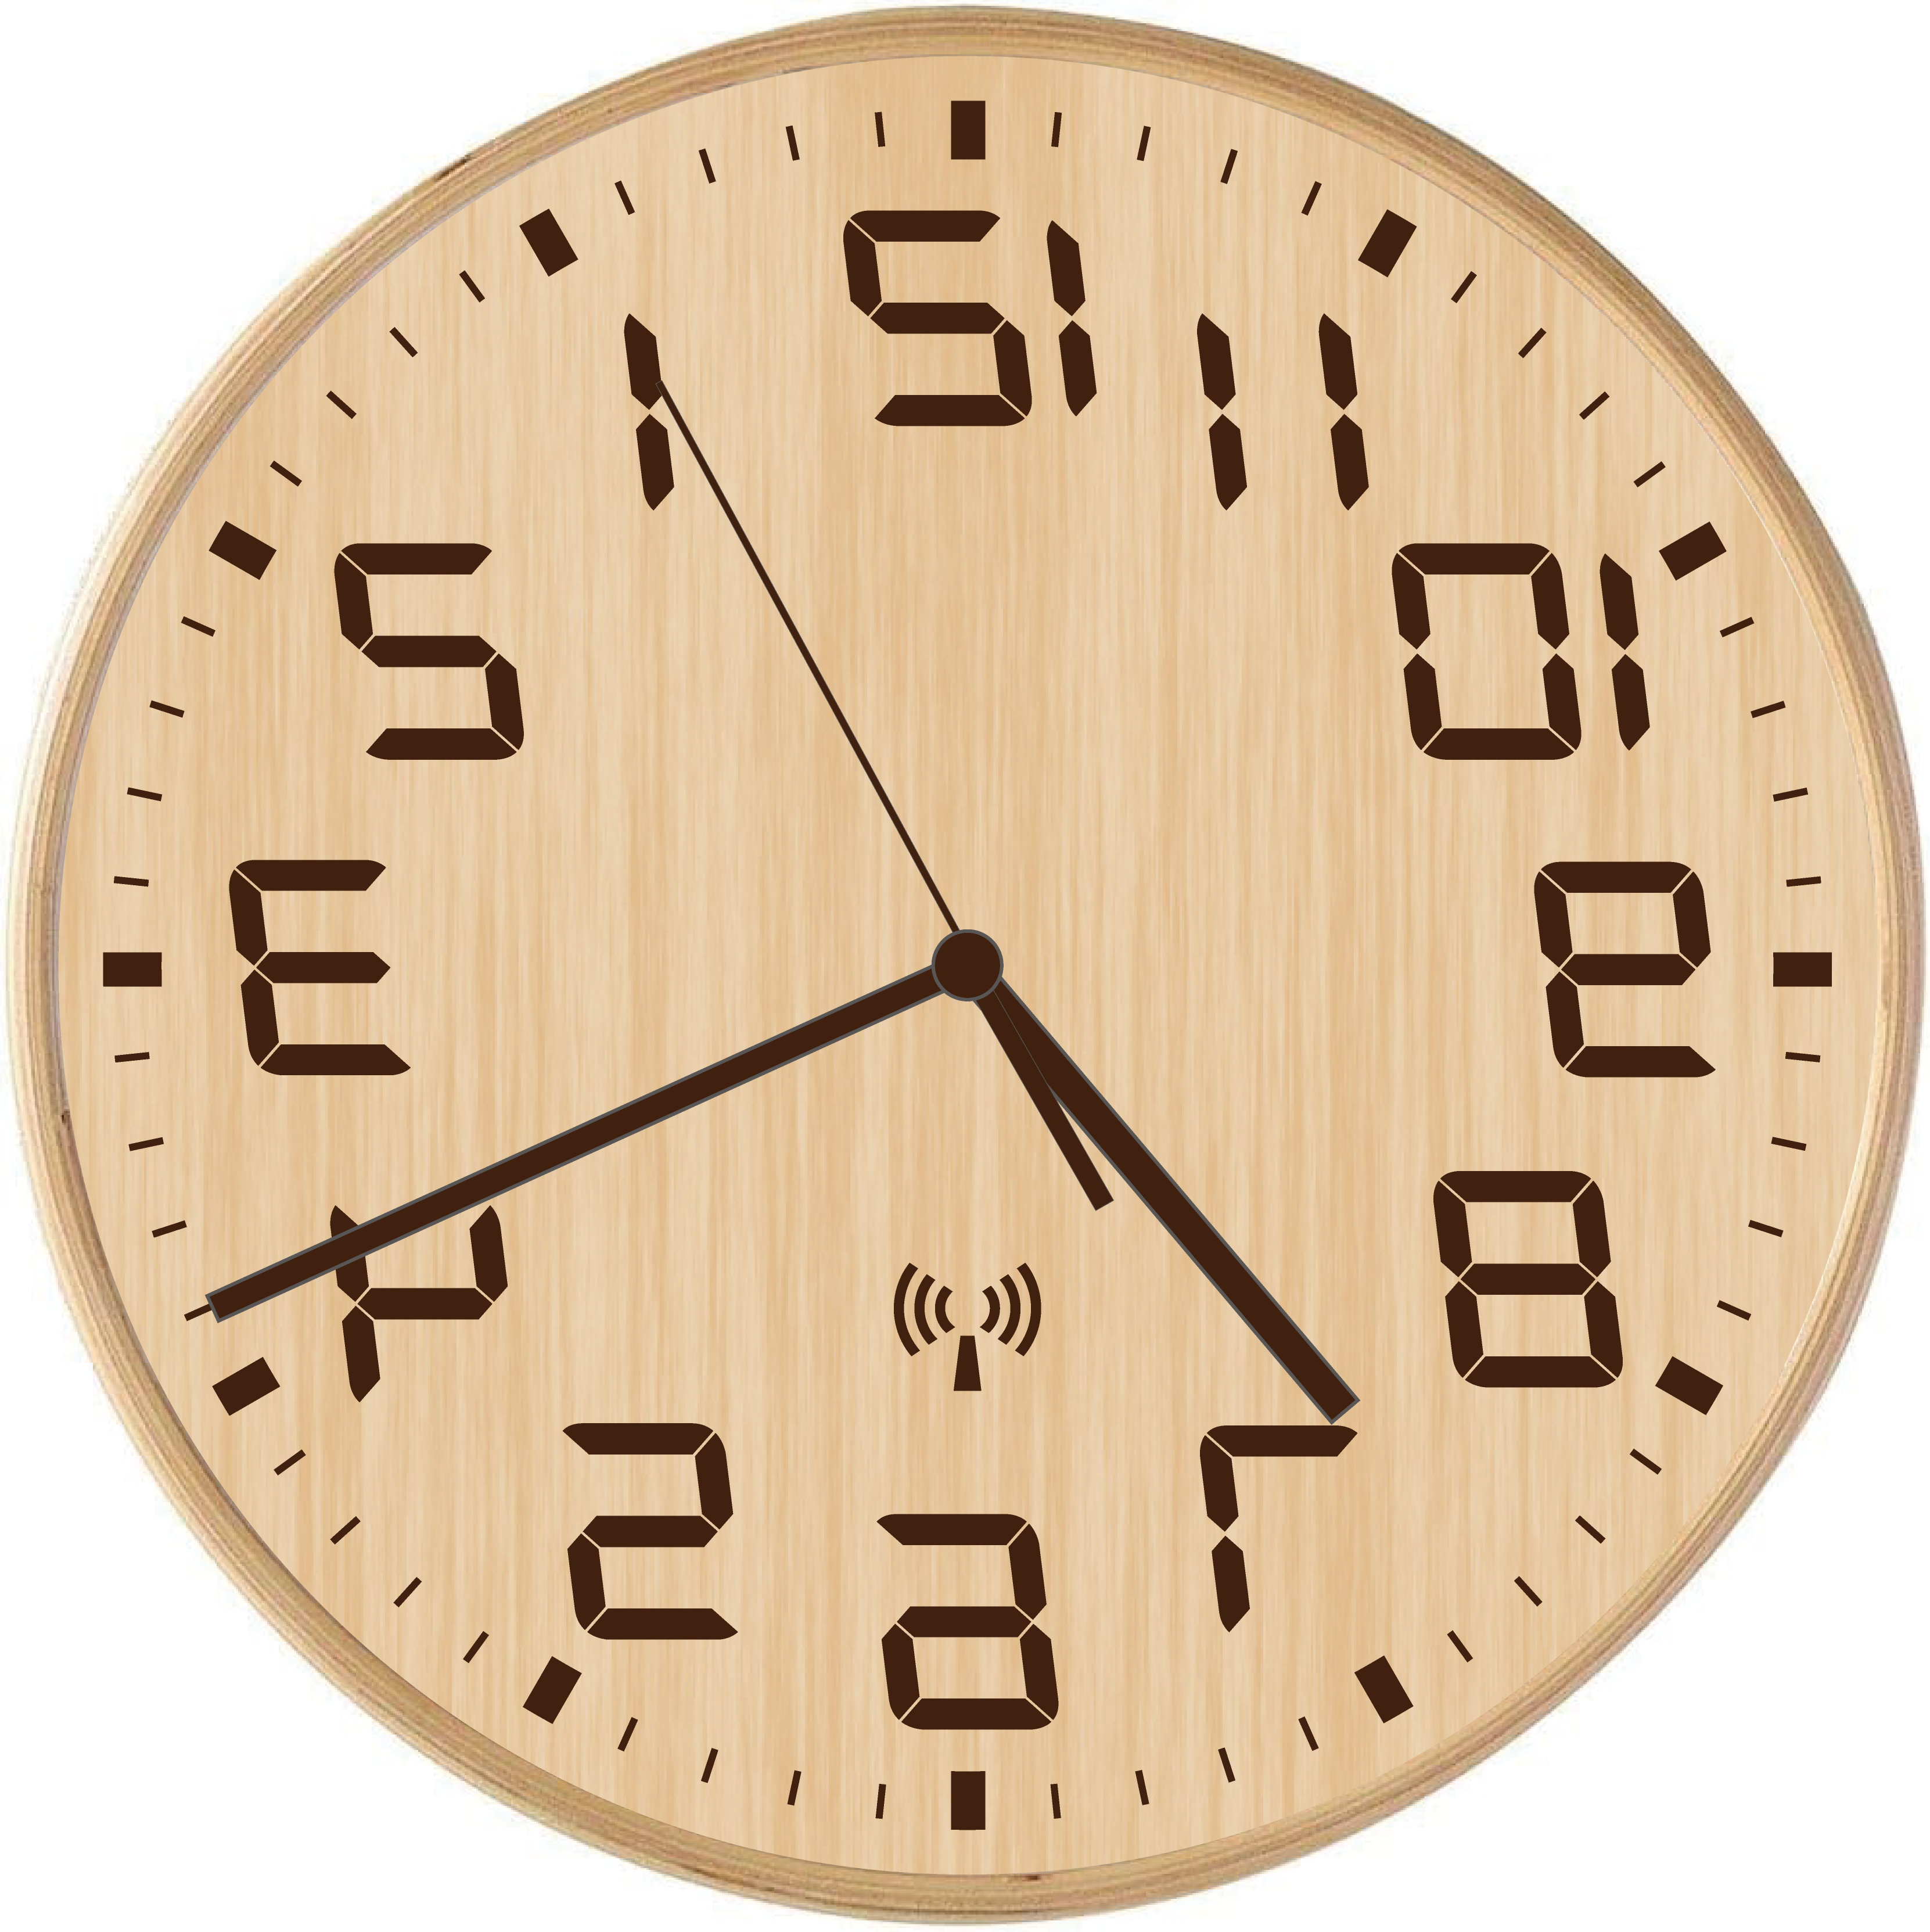 デジタル表示のアナログ時計